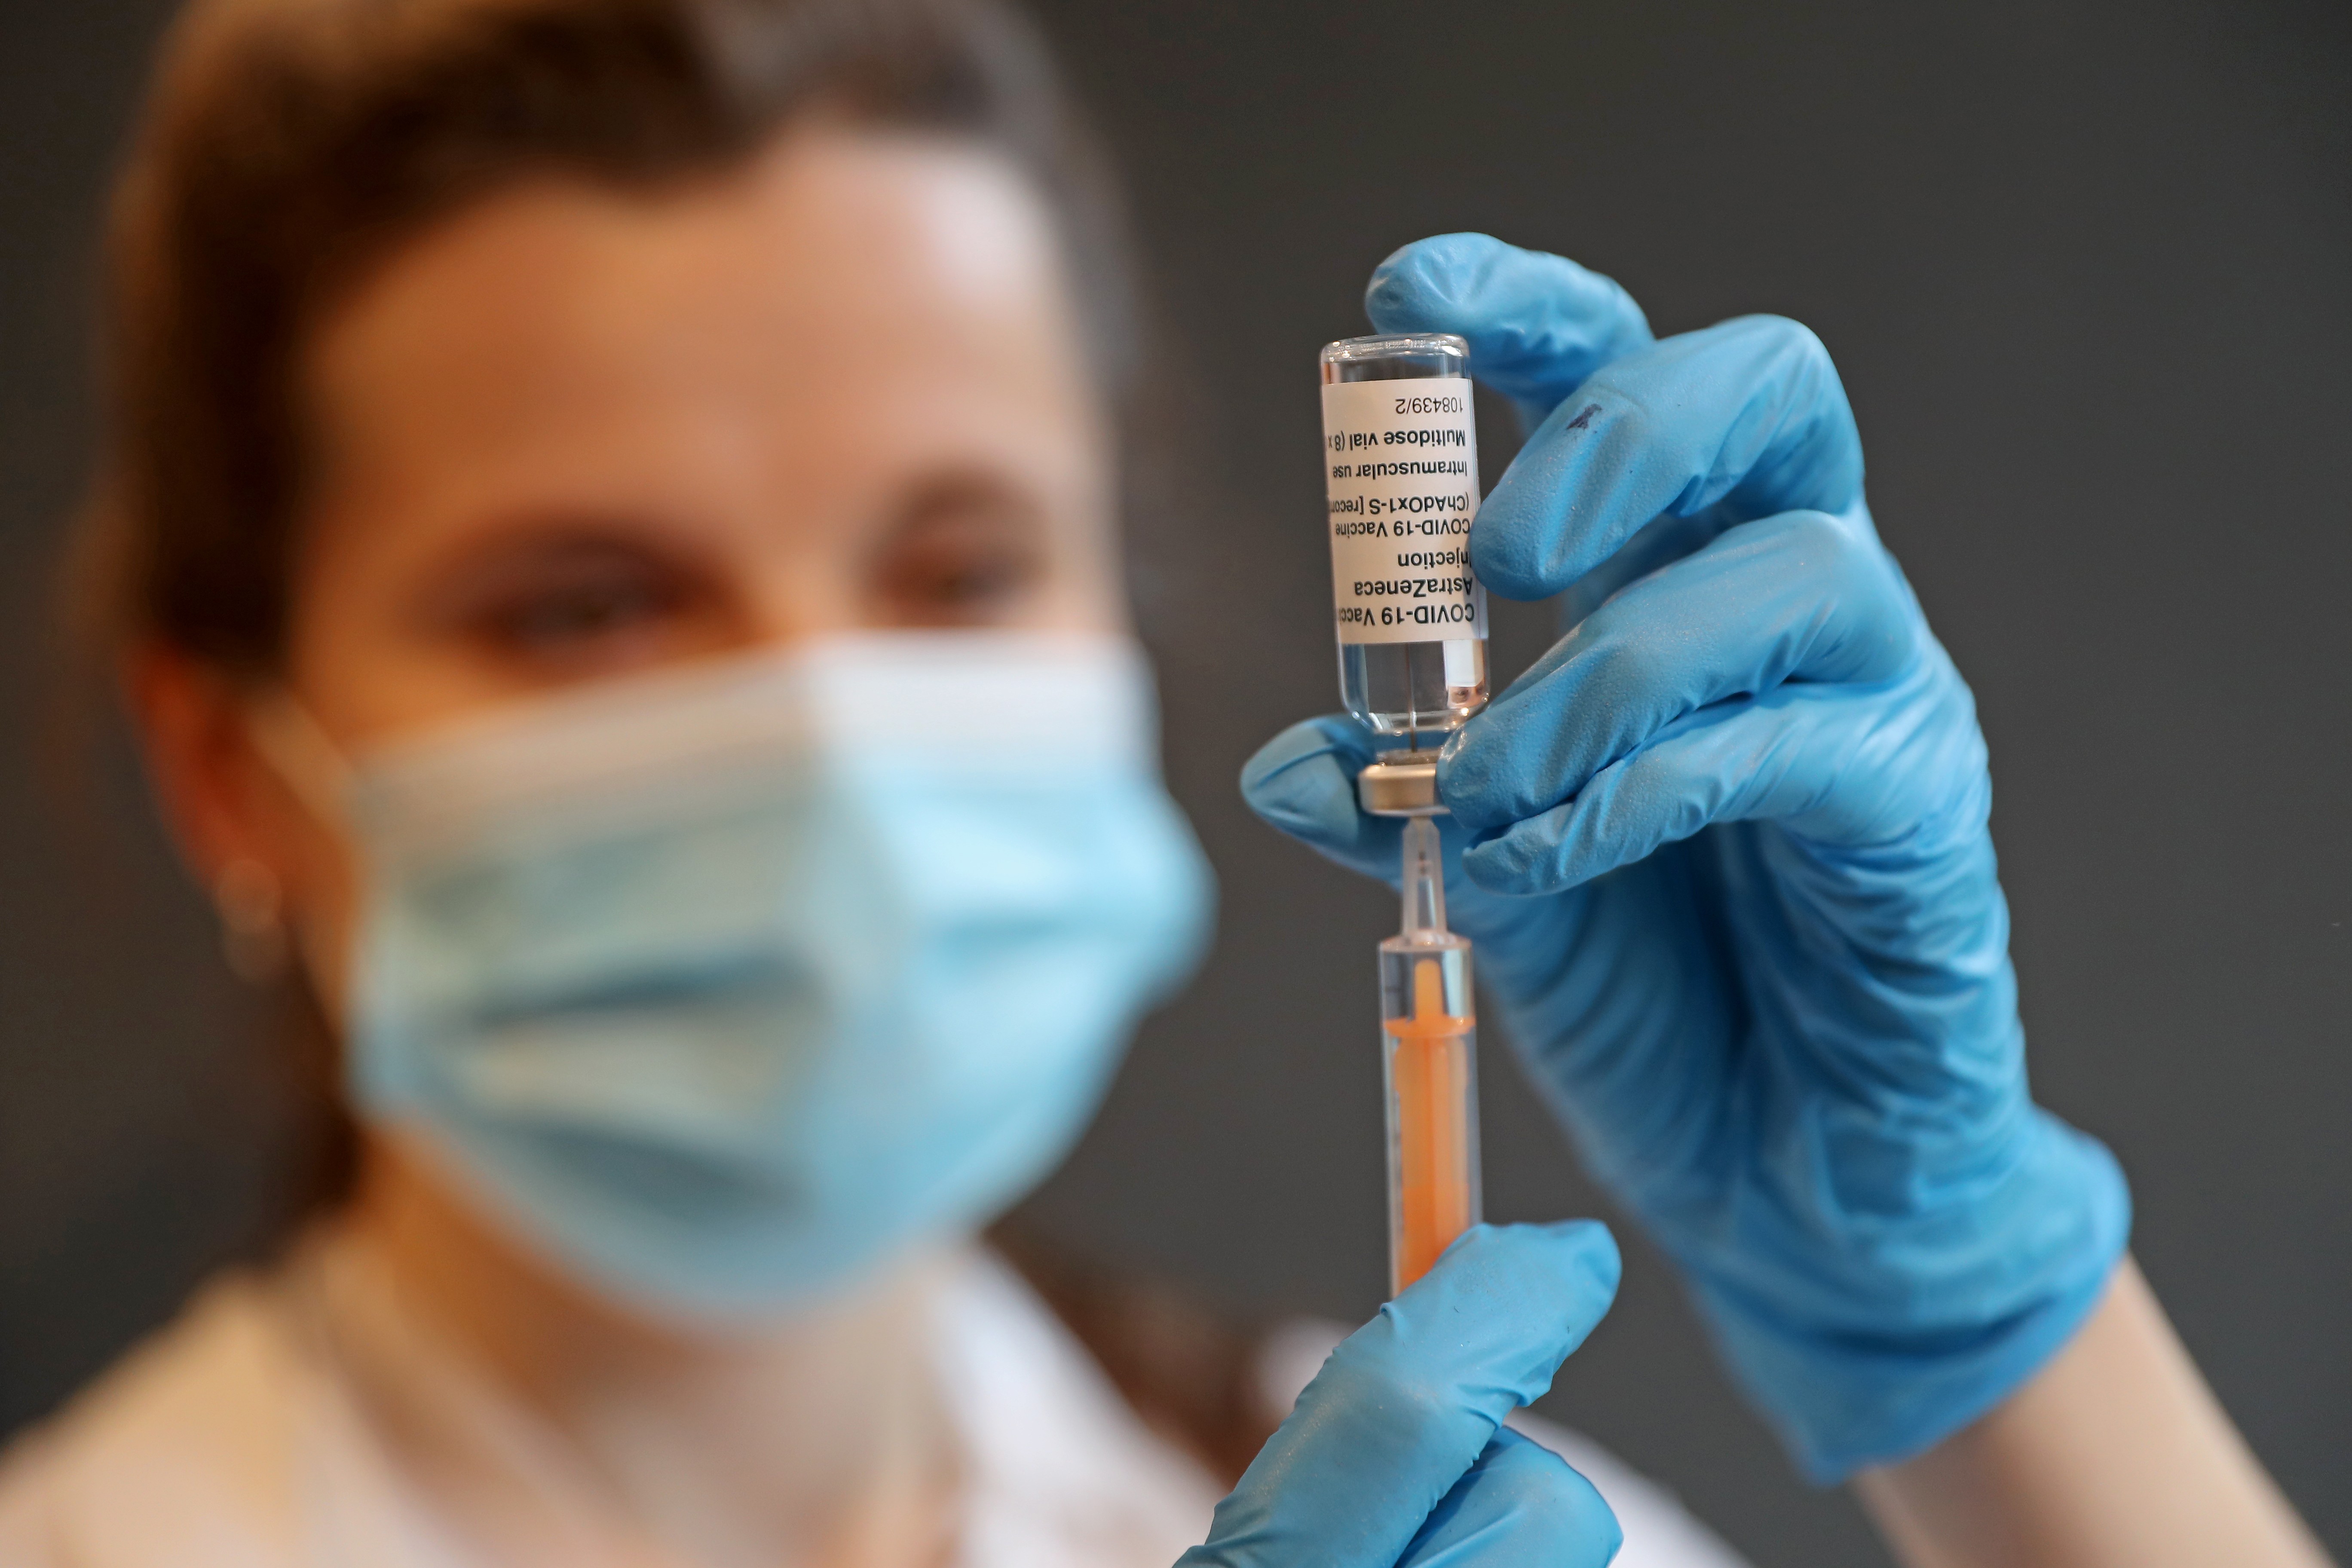 Plataformas buscam banir desinformação sobre vacinas, covid-19 e coronavírus  (Foto: Chris Jackson/Getty Images)